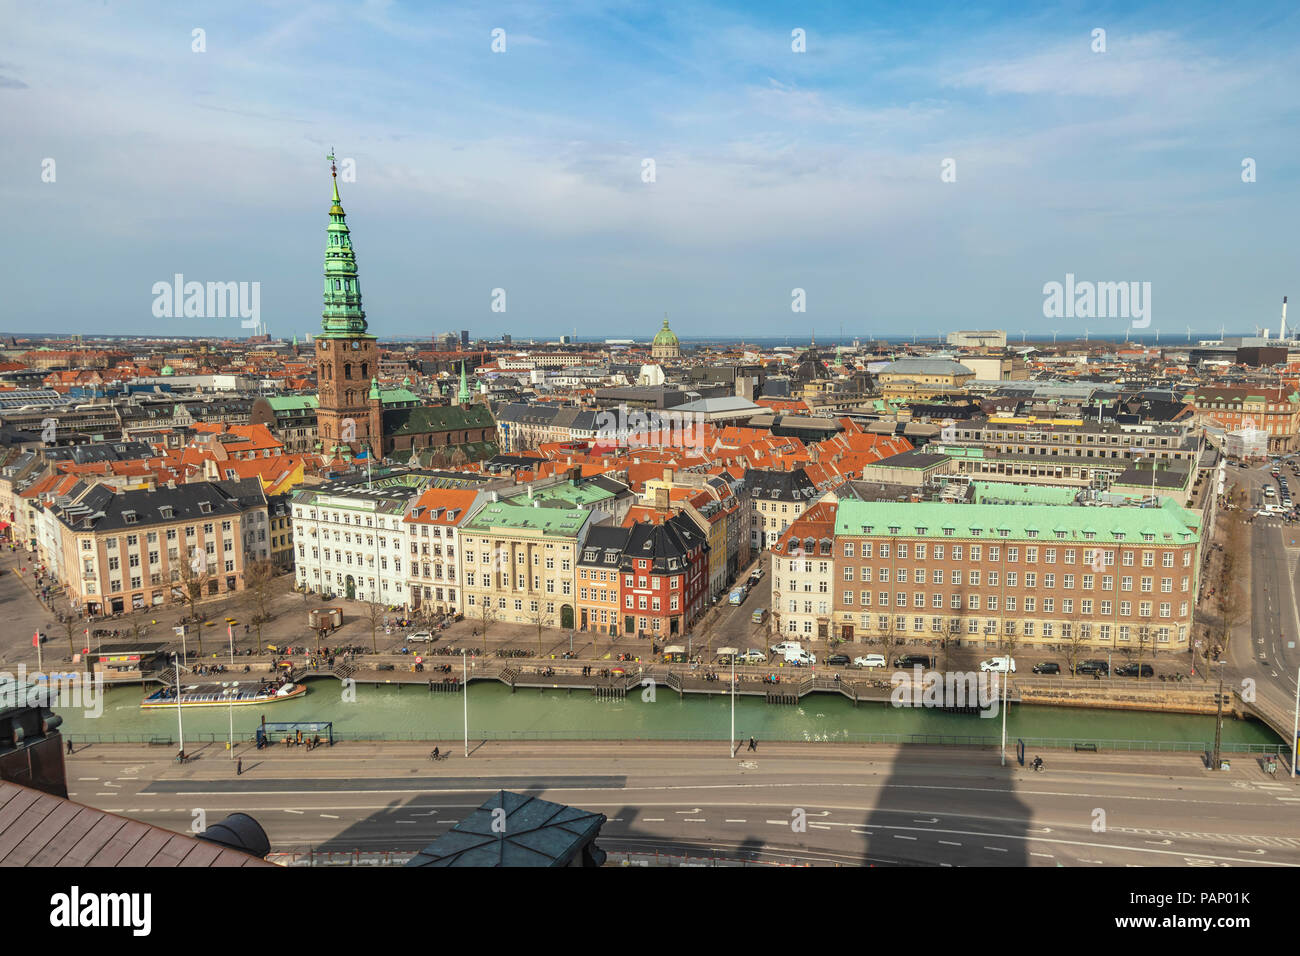 Luftbild Skyline der Stadt Kopenhagen, Kopenhagen, Dänemark Stockfoto